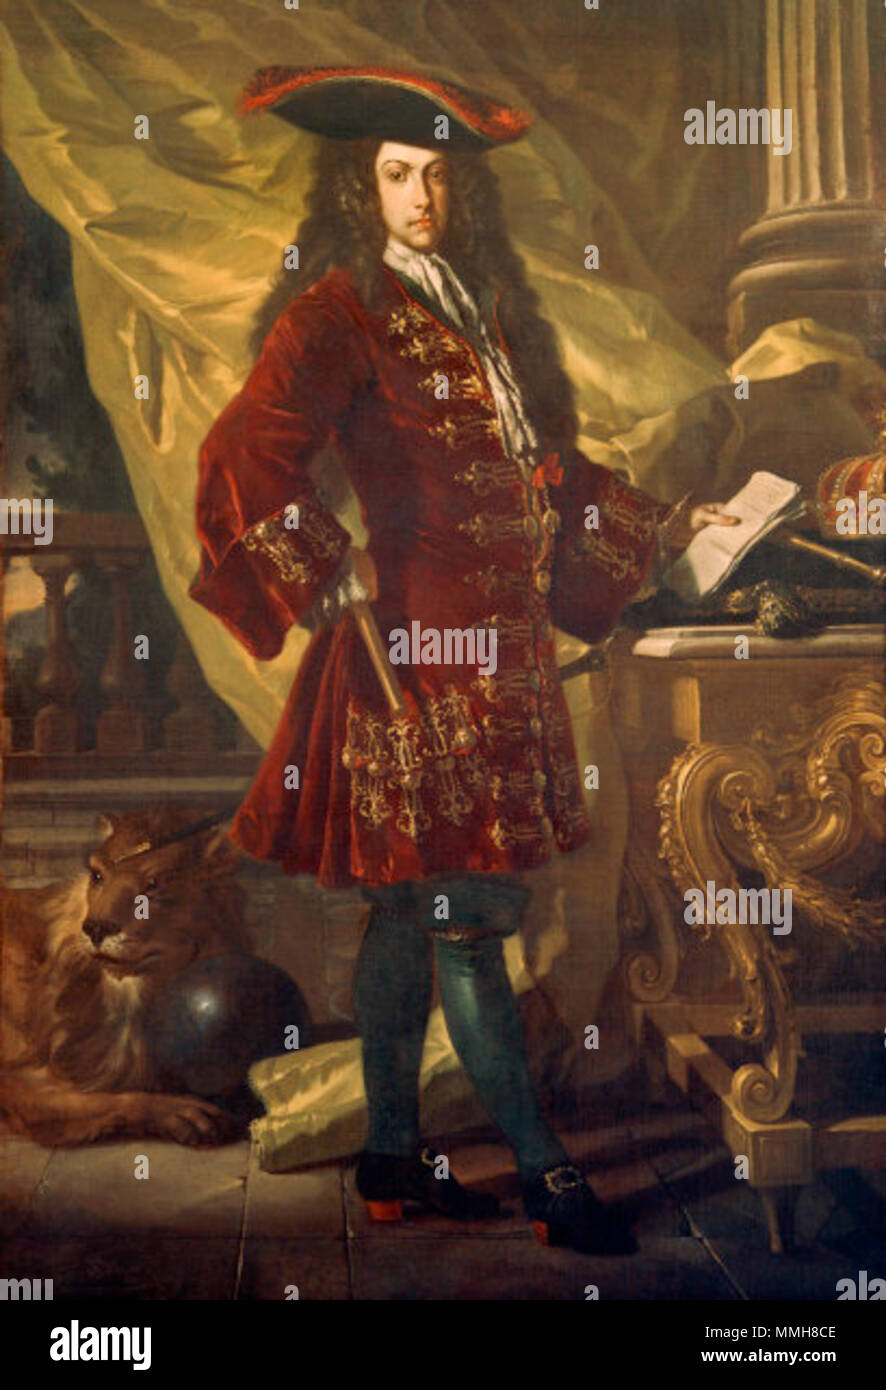 . Ritratto dell'Arciduca Carlo d'Asburgo venite a Carlo III di Spagna Ritratto di Carlo VI Imperatore del Sacro Romano Impero (1685-1740). circa 1707. Ritratto di Carlo III di Asburgo Foto Stock